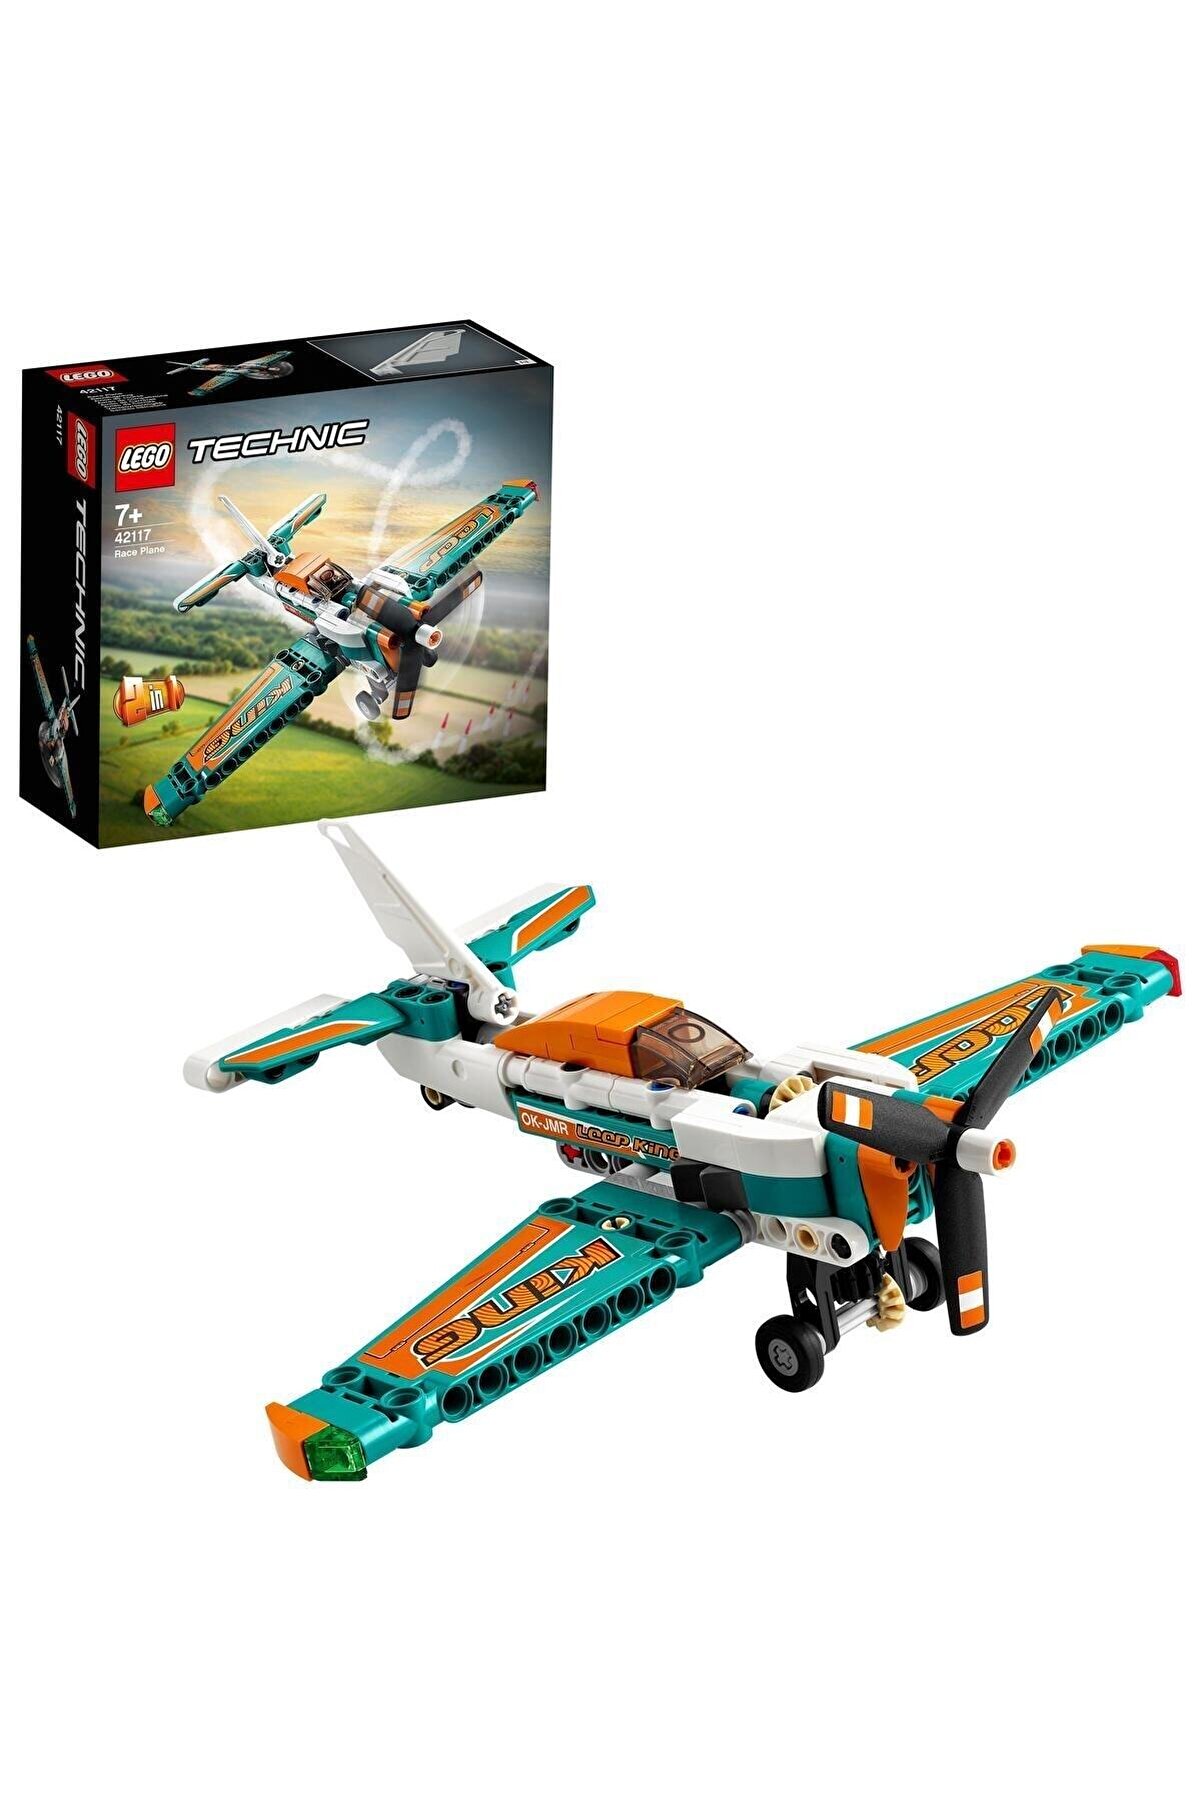 LEGO ® Technic Yarış Uçağı 42117 - Çocuklar İçin Koleksiyonluk Model Yapım Seti (154 Parça)